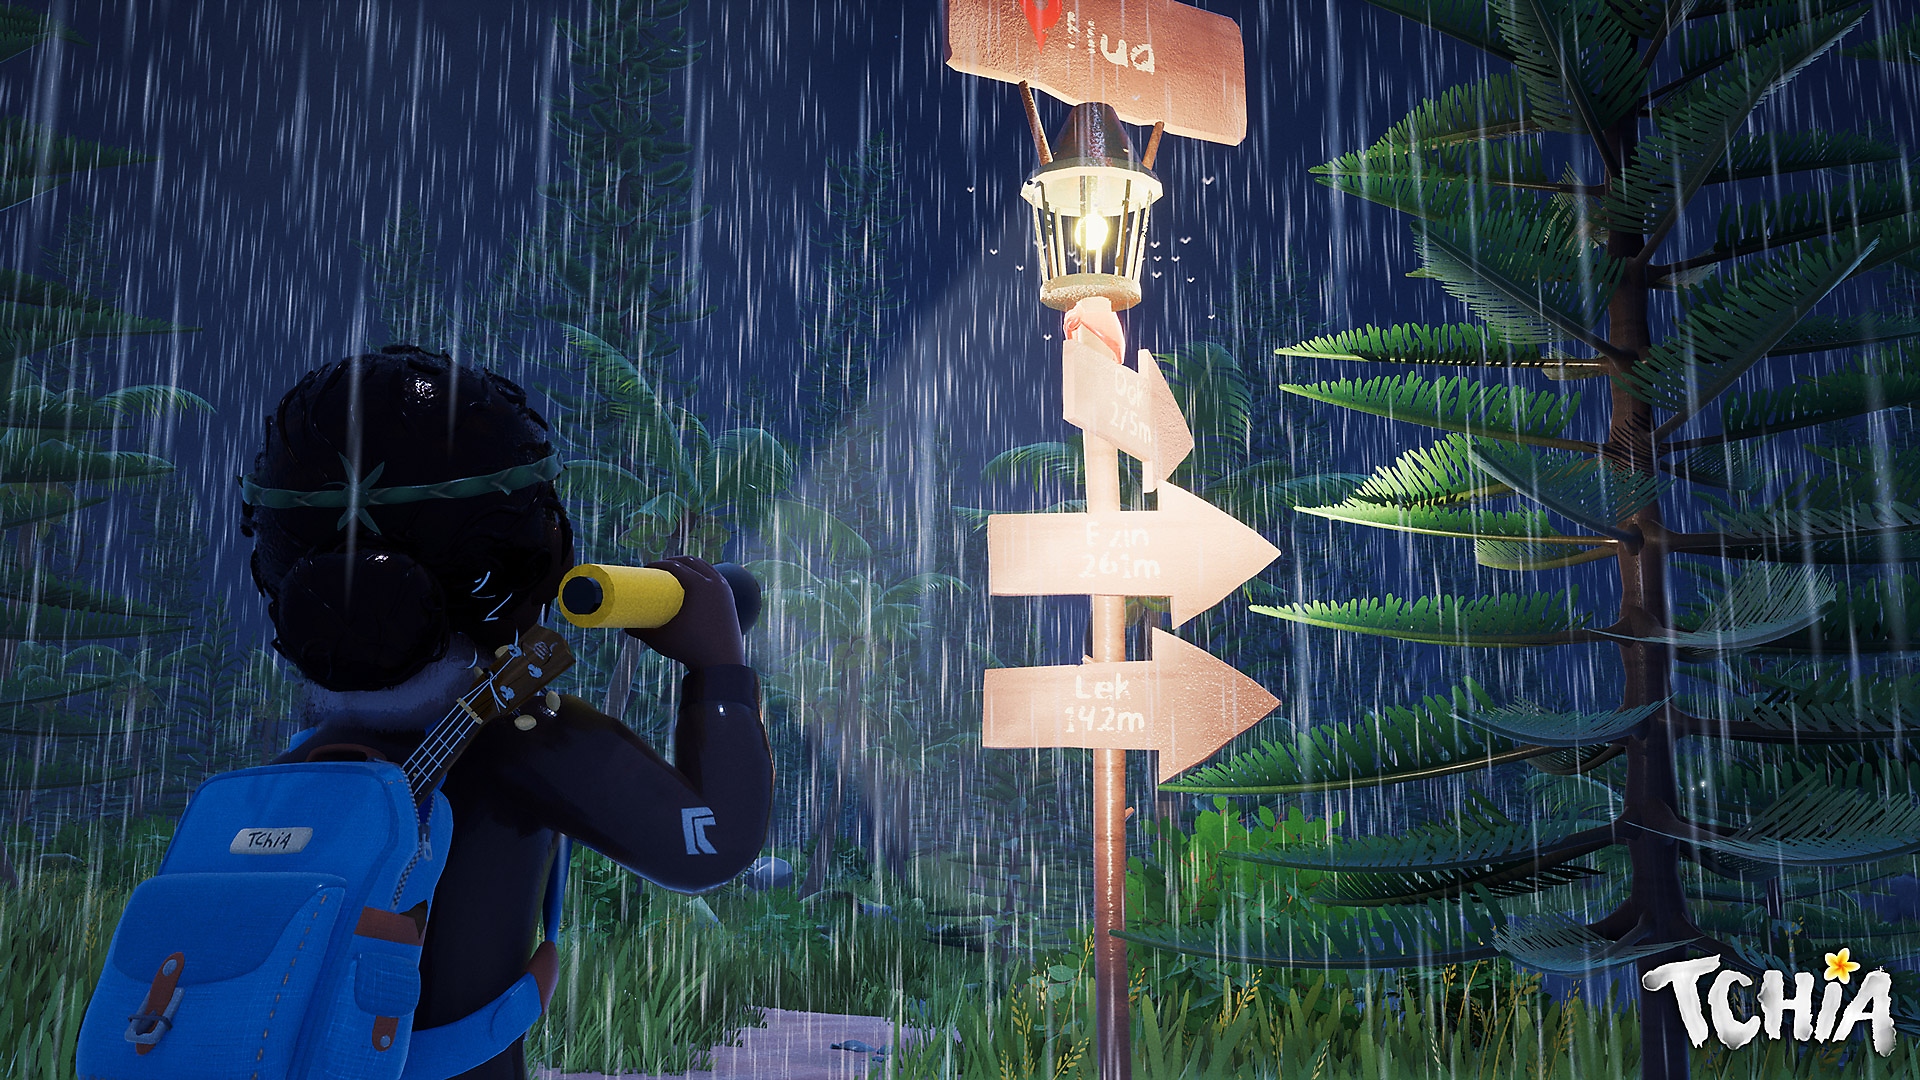 لقطة شاشة لـ Tchia تظهر فيها إحدى الشخصيات وهي تقف تحت الأمطار وتنظر إلى علامة الطريق 